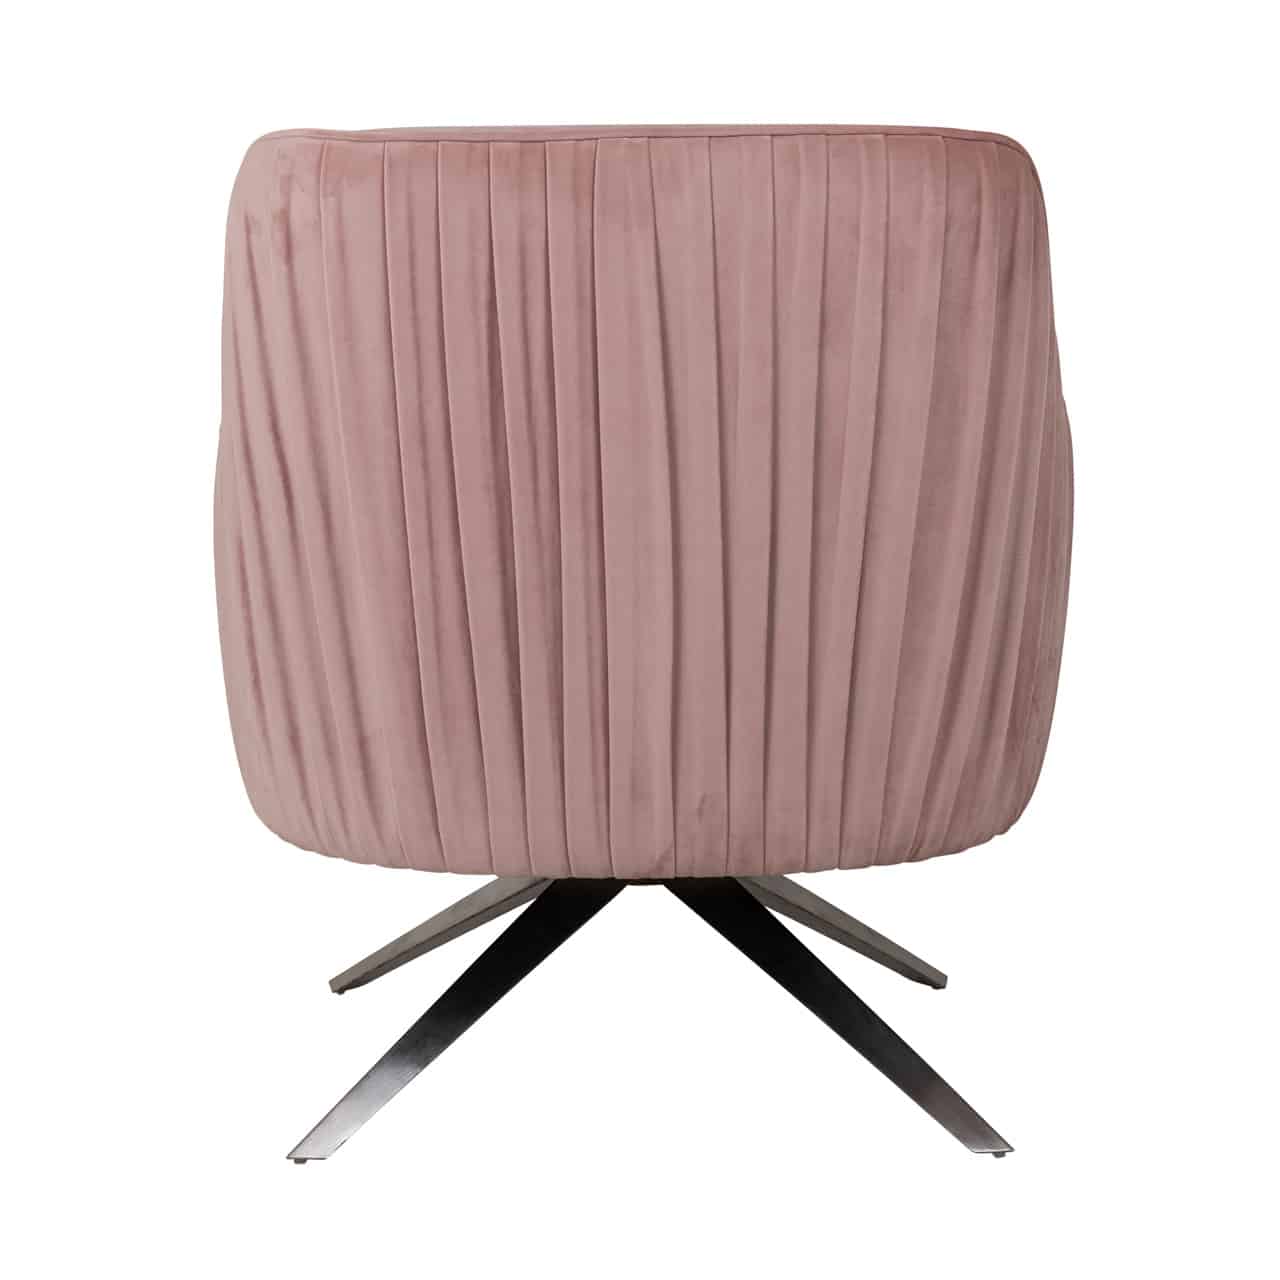 RI - S4421 pink fotel